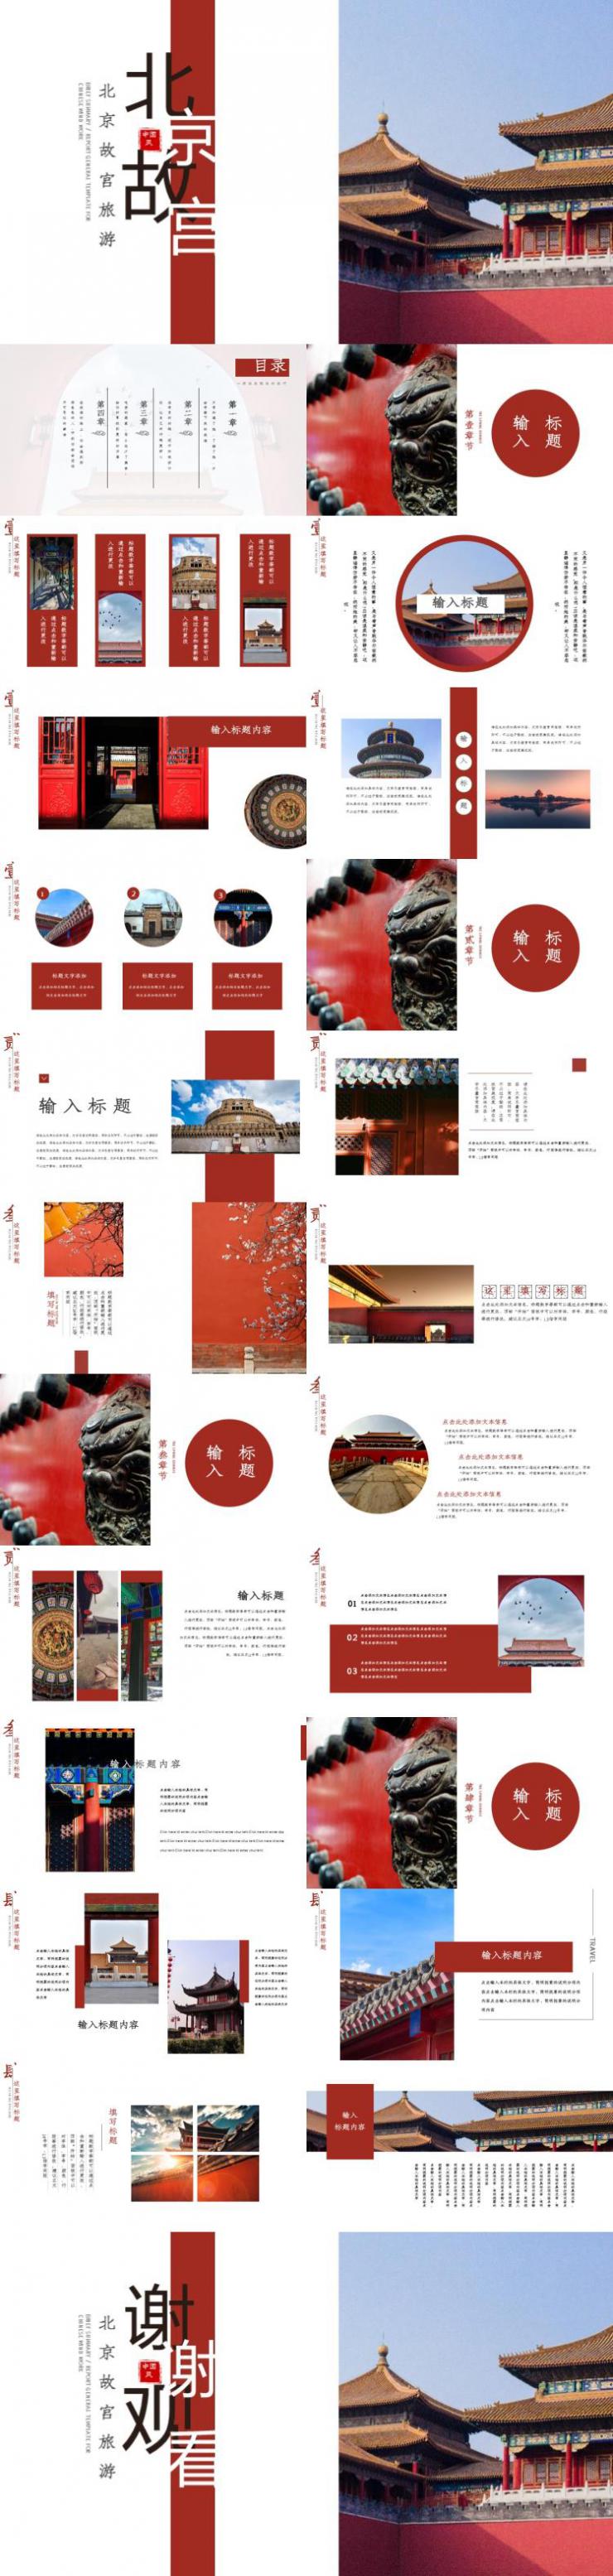 北京故宫旅游PPT模板下载